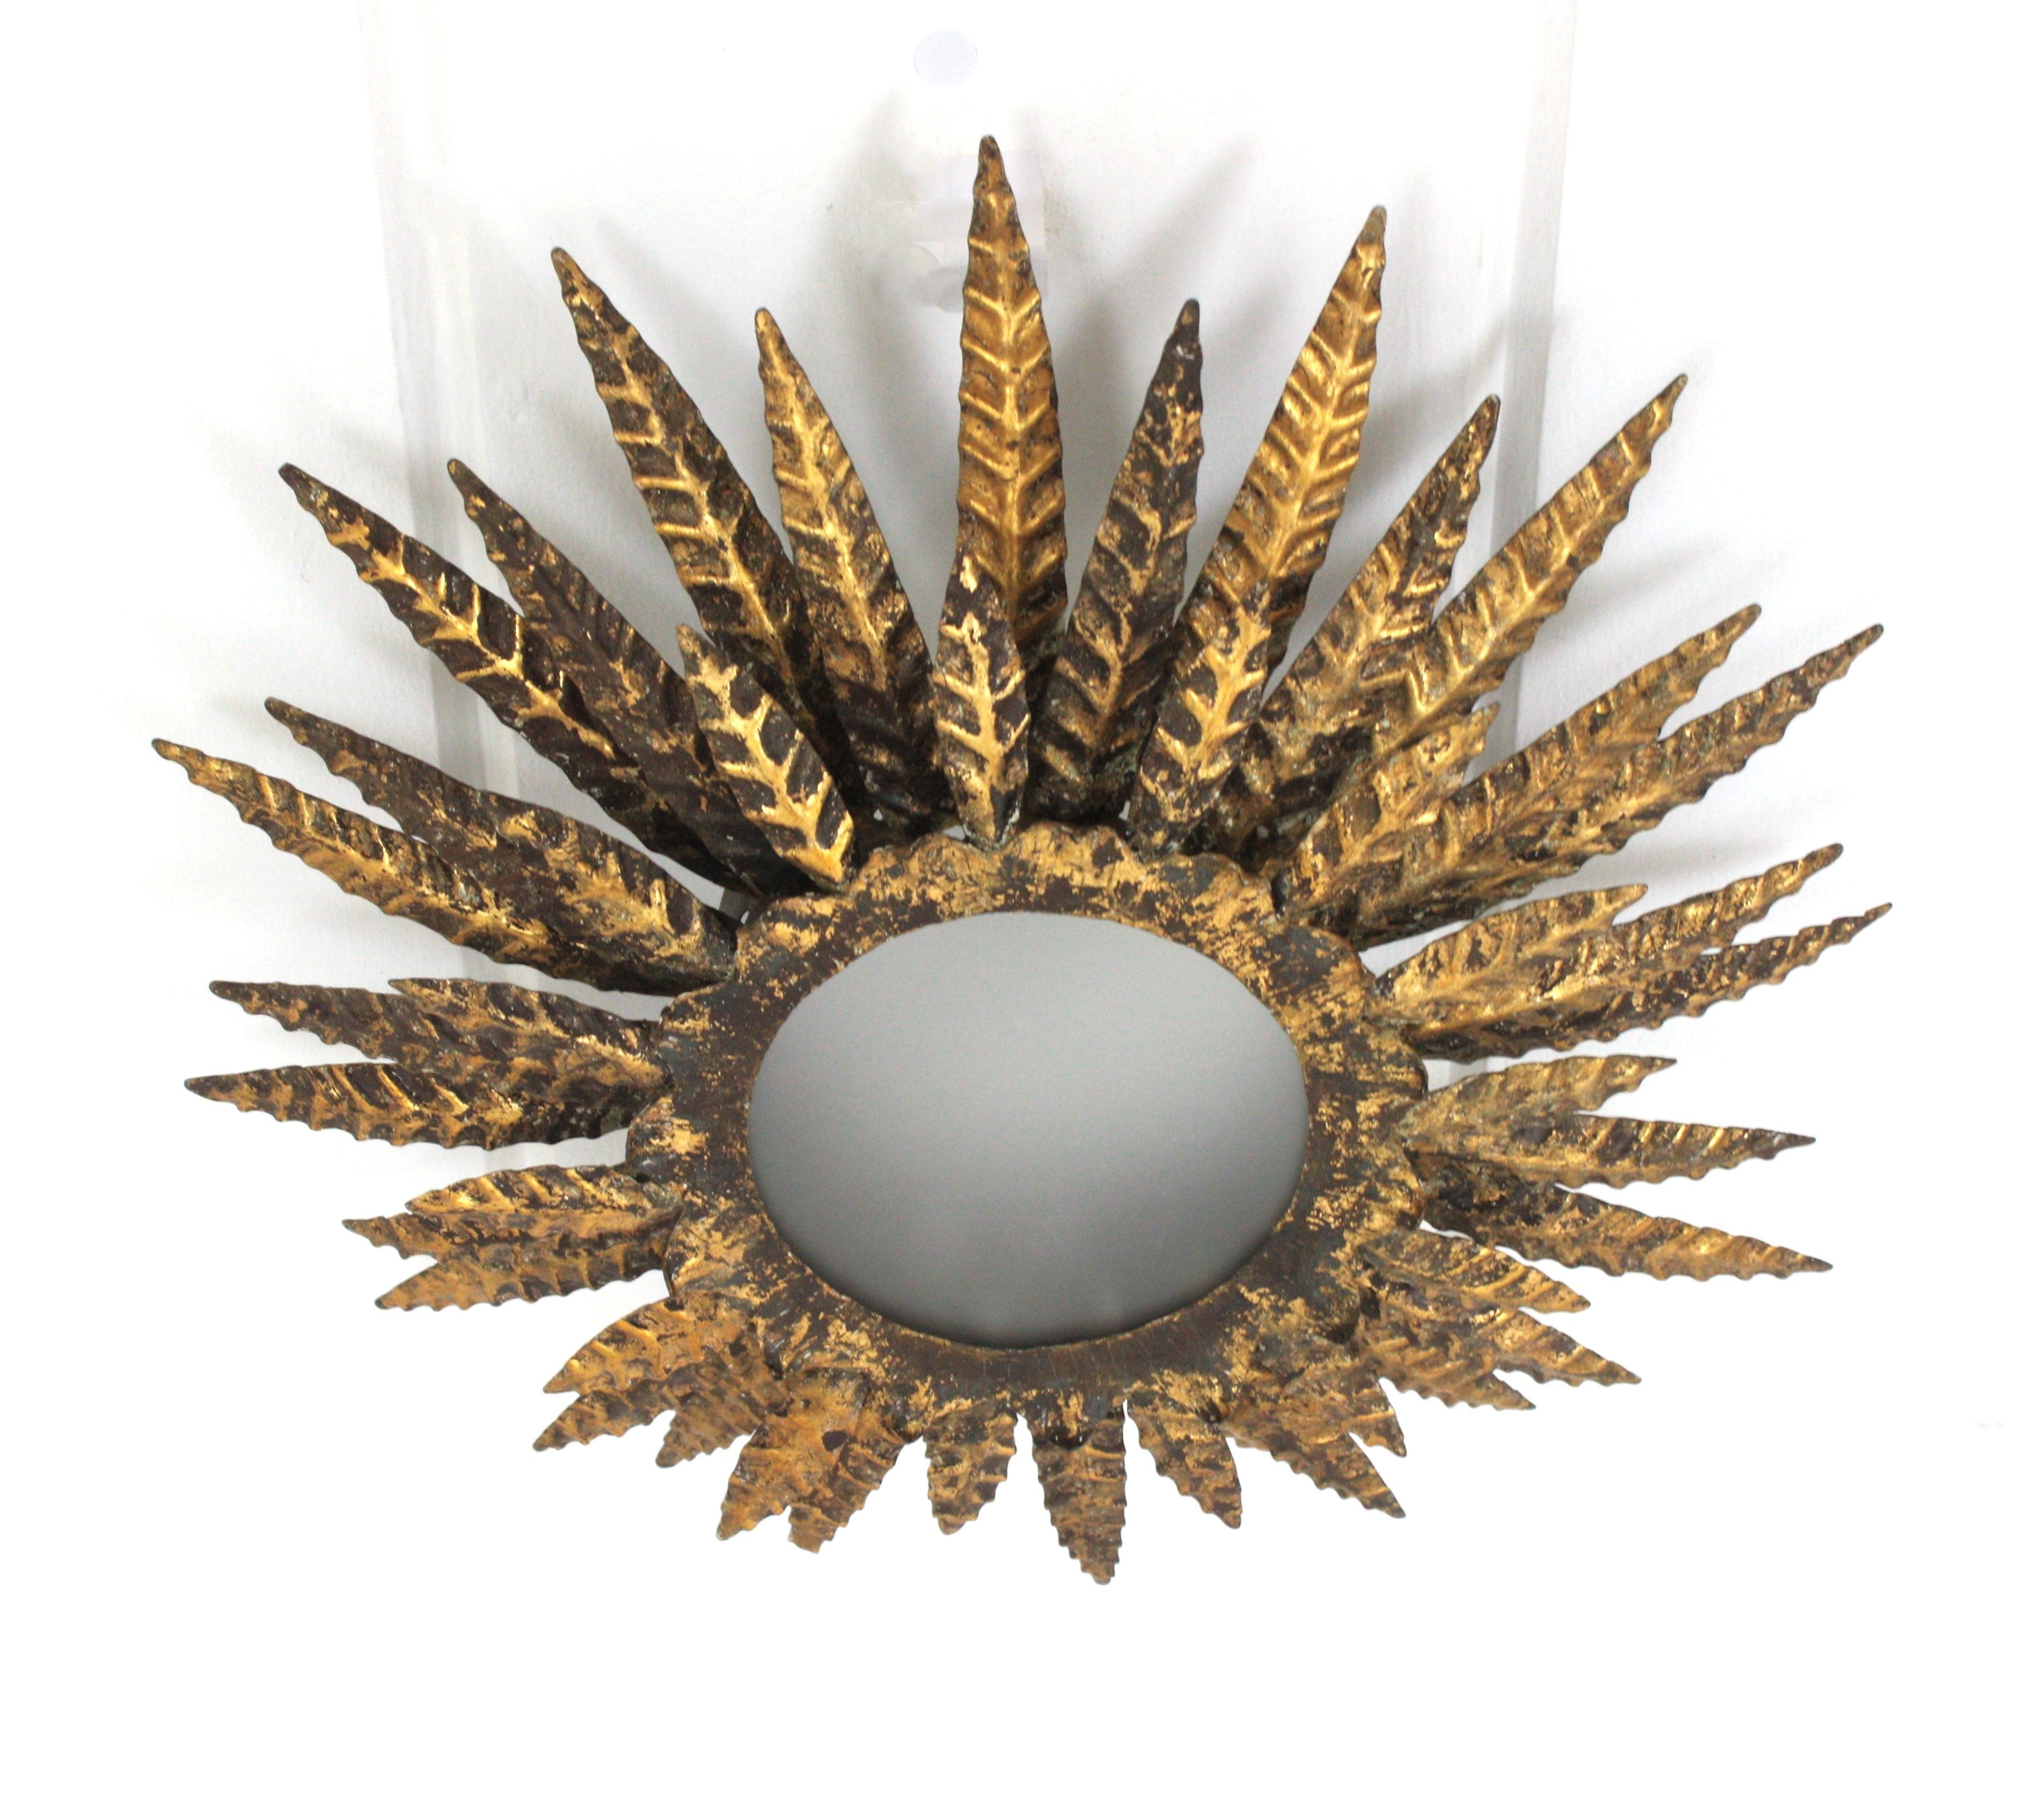 Wunderschöne Brutalist vergoldetes Eisen und Glas sunburst flush mount Deckenleuchte oder Kronleuchter. Frankreich, 1950er Jahre.
Diese Sunburst-Leuchte zeichnet sich durch eine dreifache Schicht von Blättern / Strahlen aus, die eine zentrale